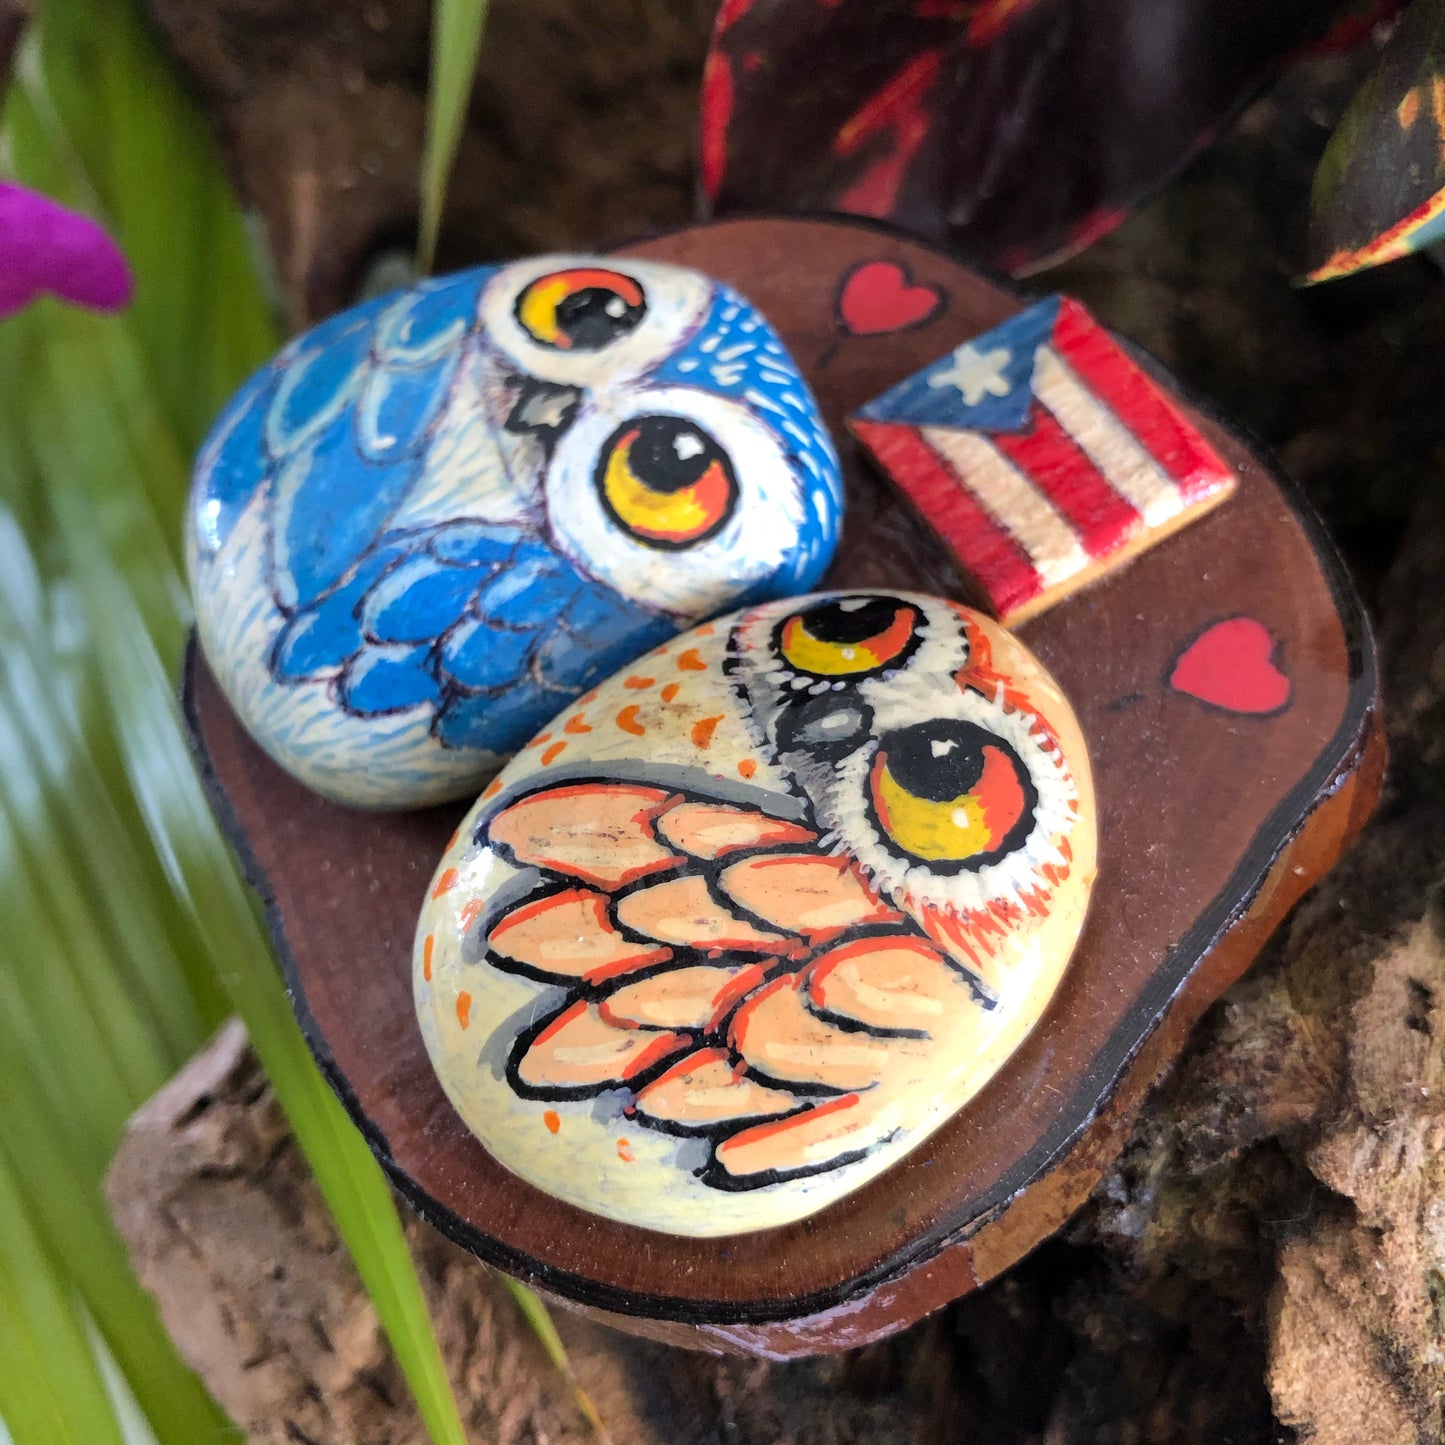 Artesanía - Brown Buhitos in love - rock owls - Puerto Rico flag.